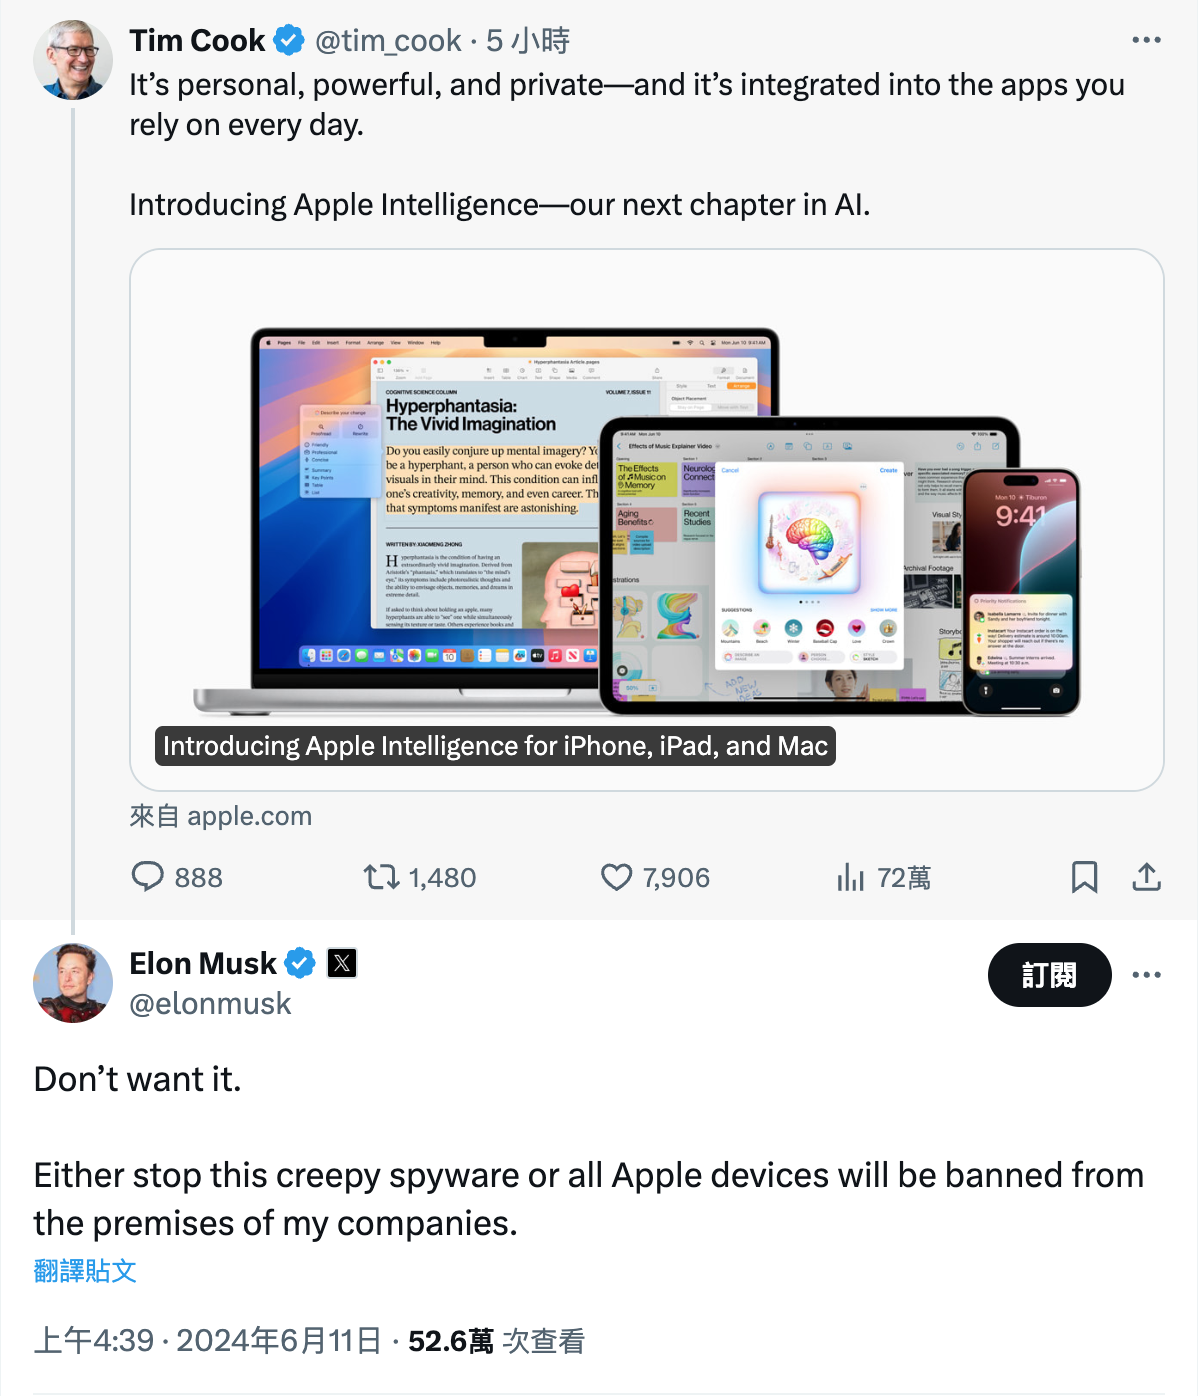 馬斯克嗆蘋果「若整合OpenAI就禁用」　還要求員工手機放法拉第籠